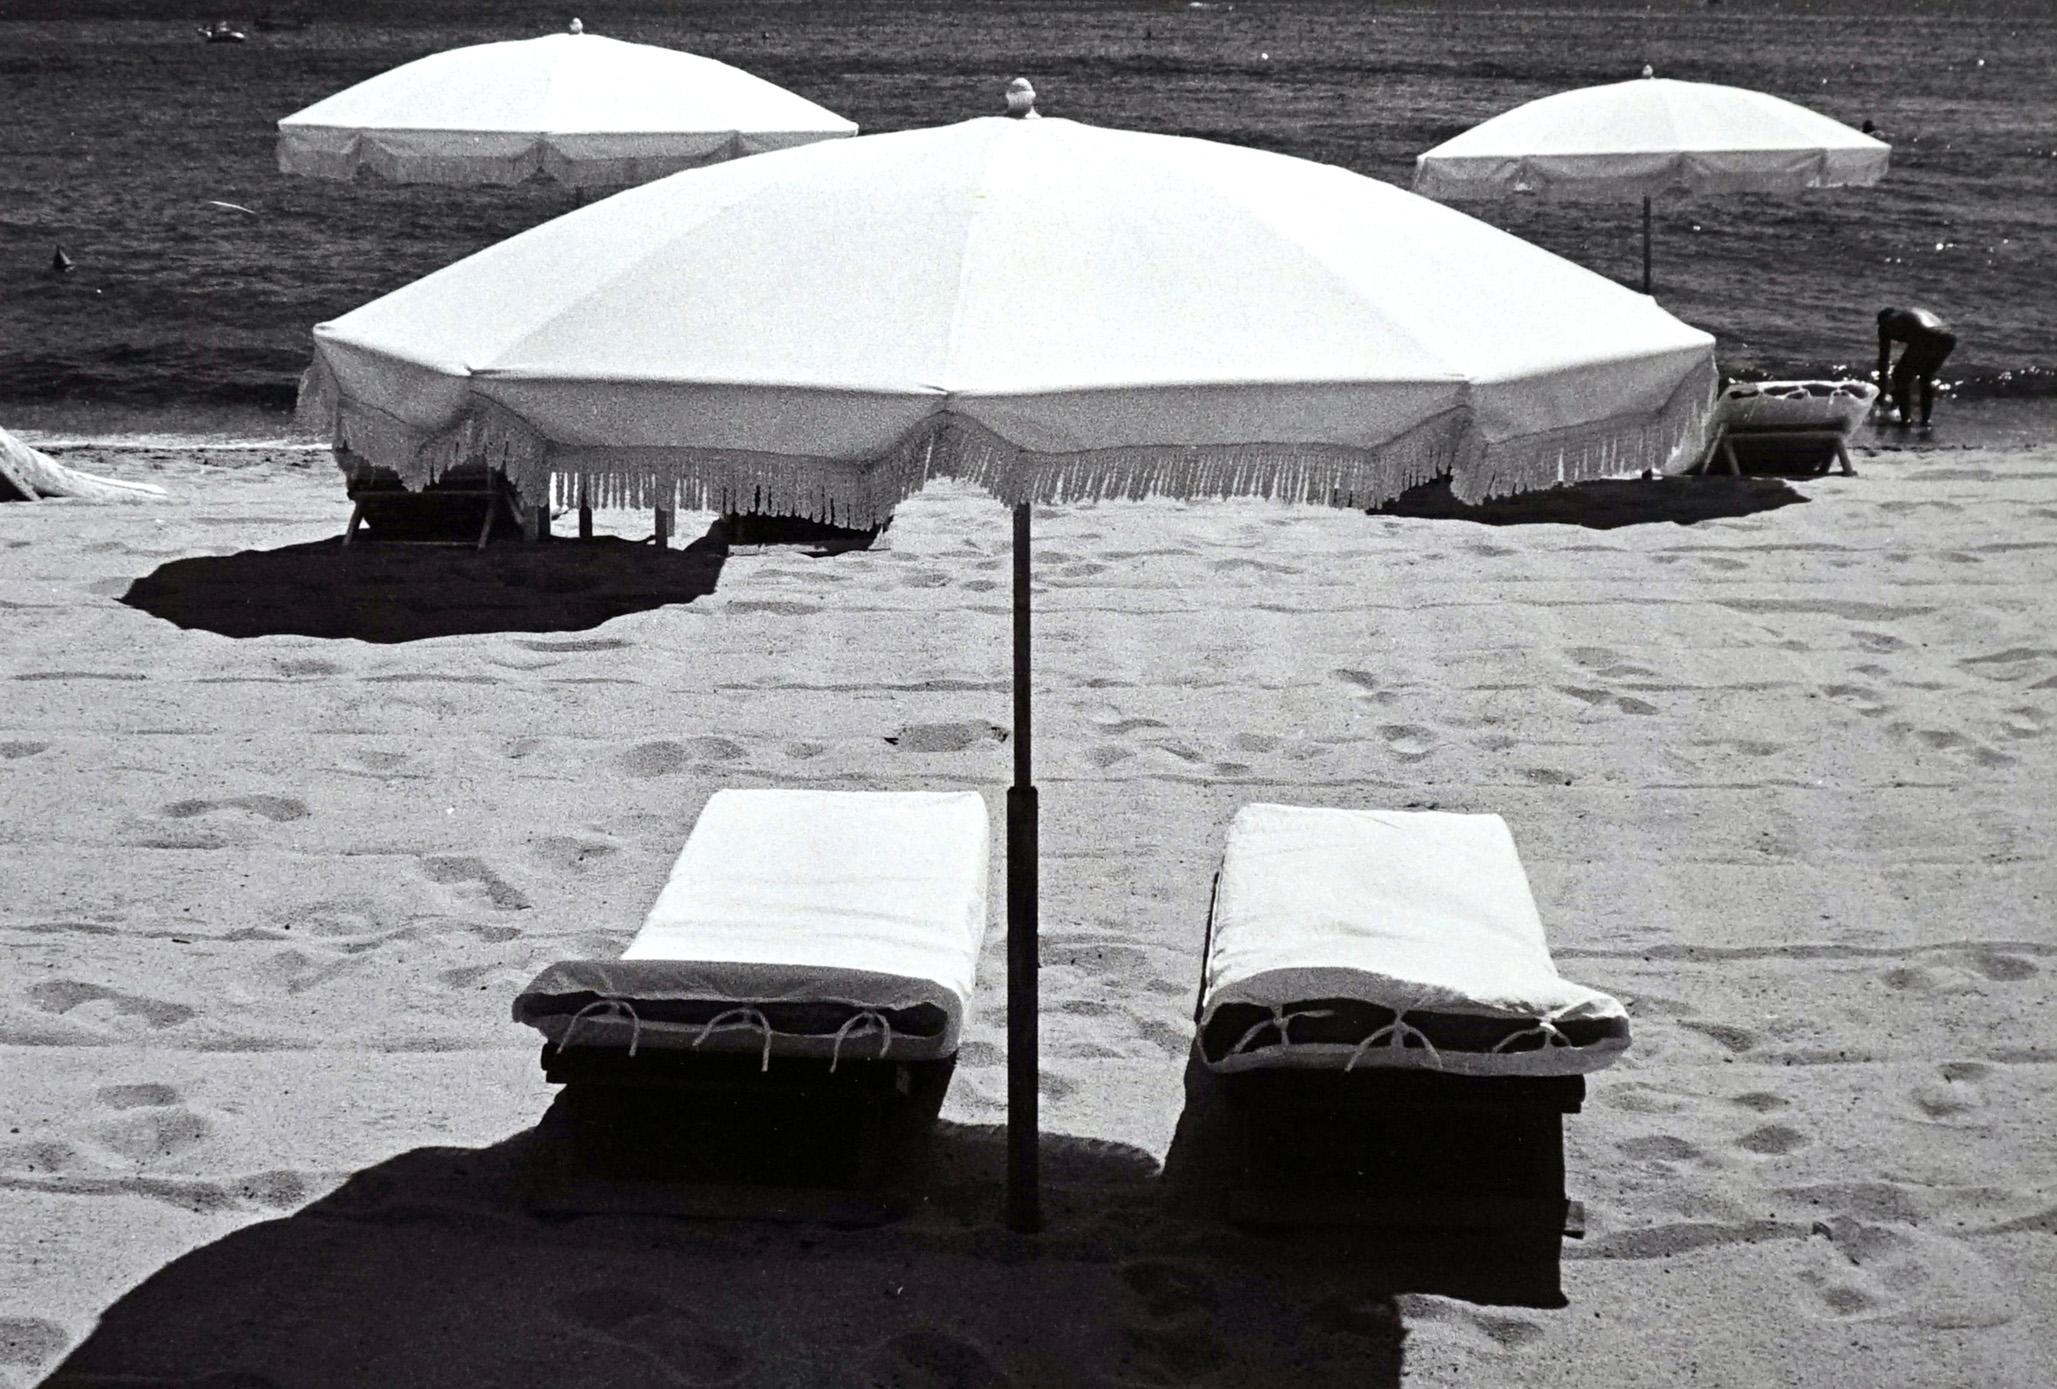 Rivages - Off-Print # 1 - St Tropez - Photographie minimaliste en noir et blanc